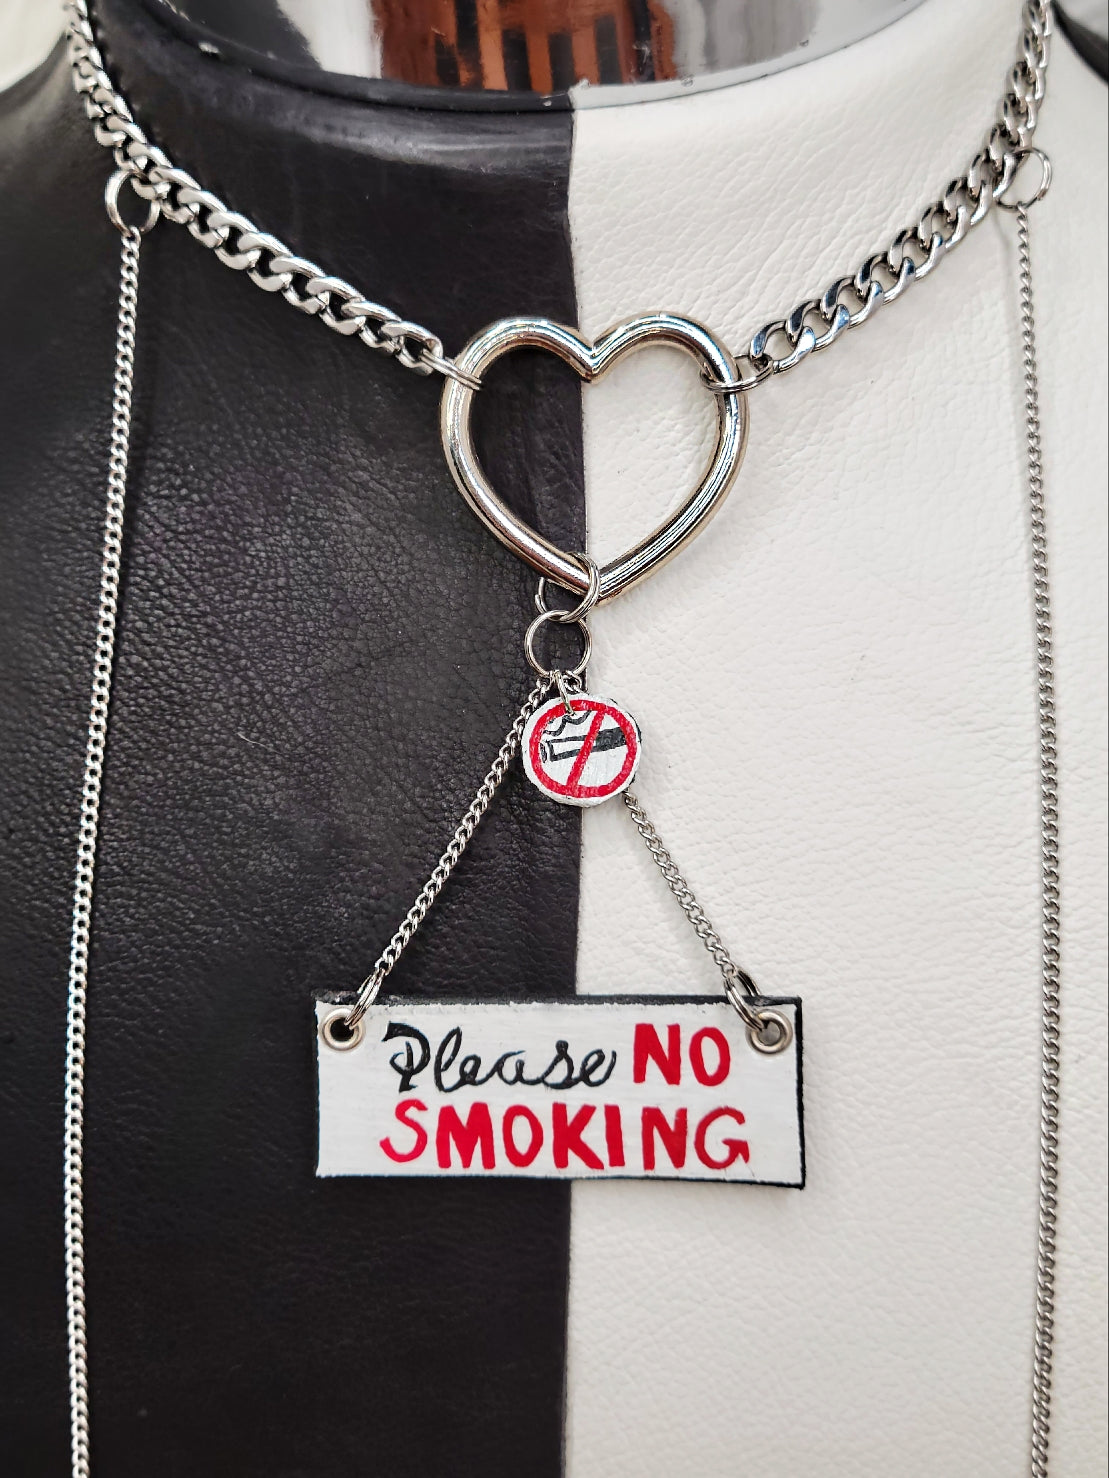 Please, NO SMOKING-Necklace